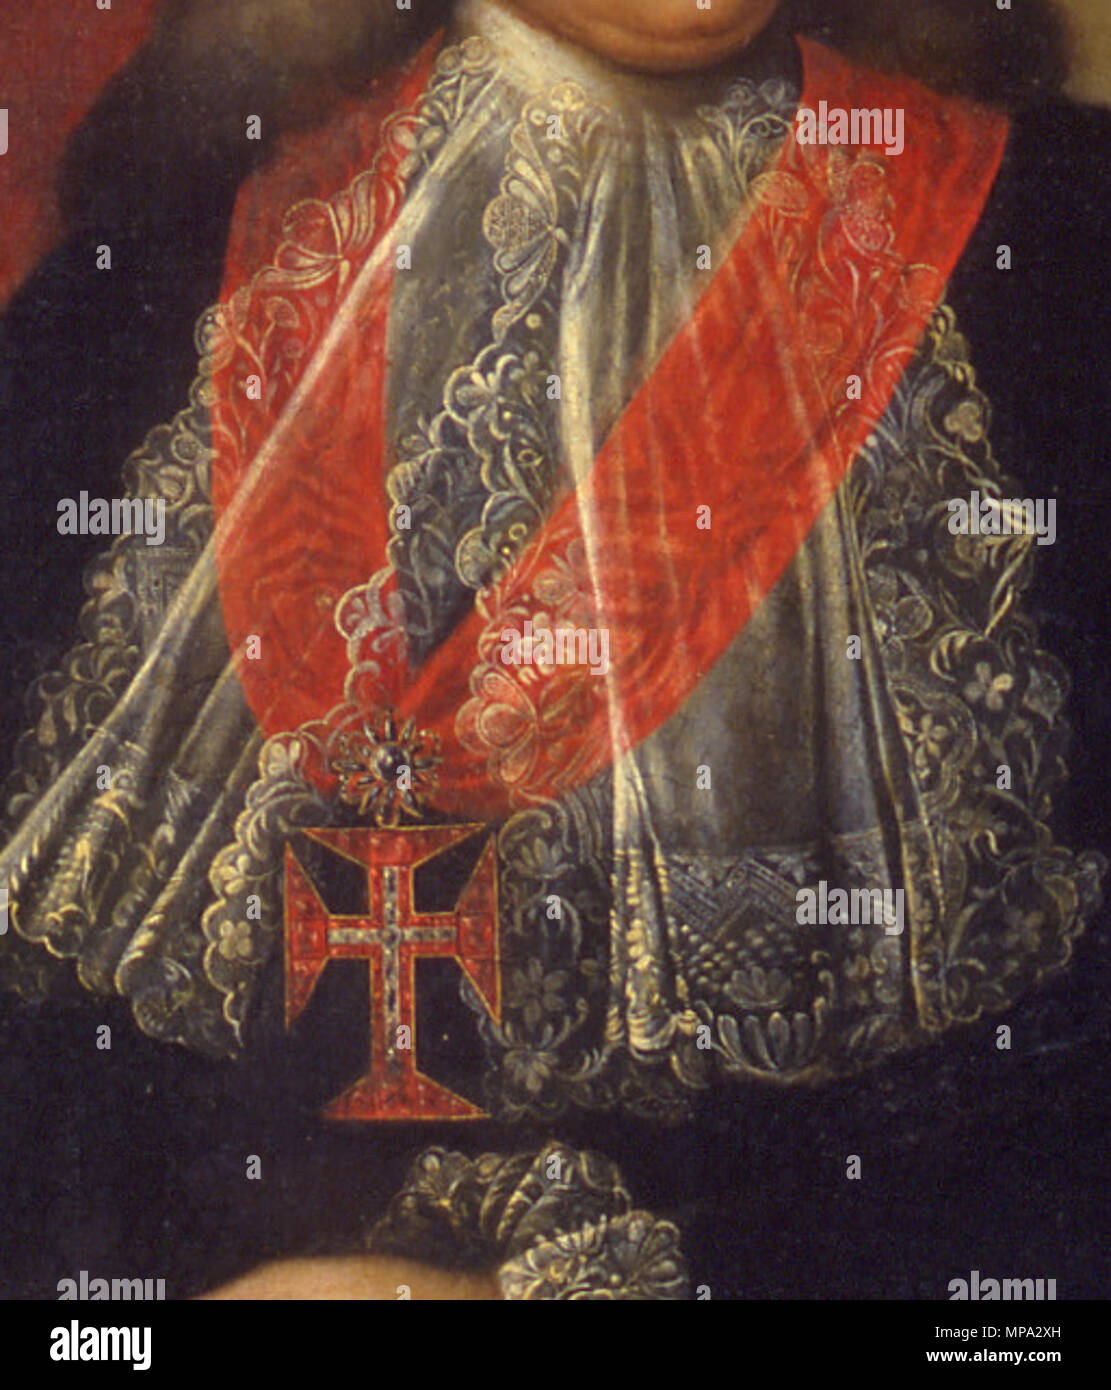 864 Marquês de Pombal (pormenor jabot e Ordem de Cristo) - Joana do Salitre (Palácio Pimenta) Stock Photo